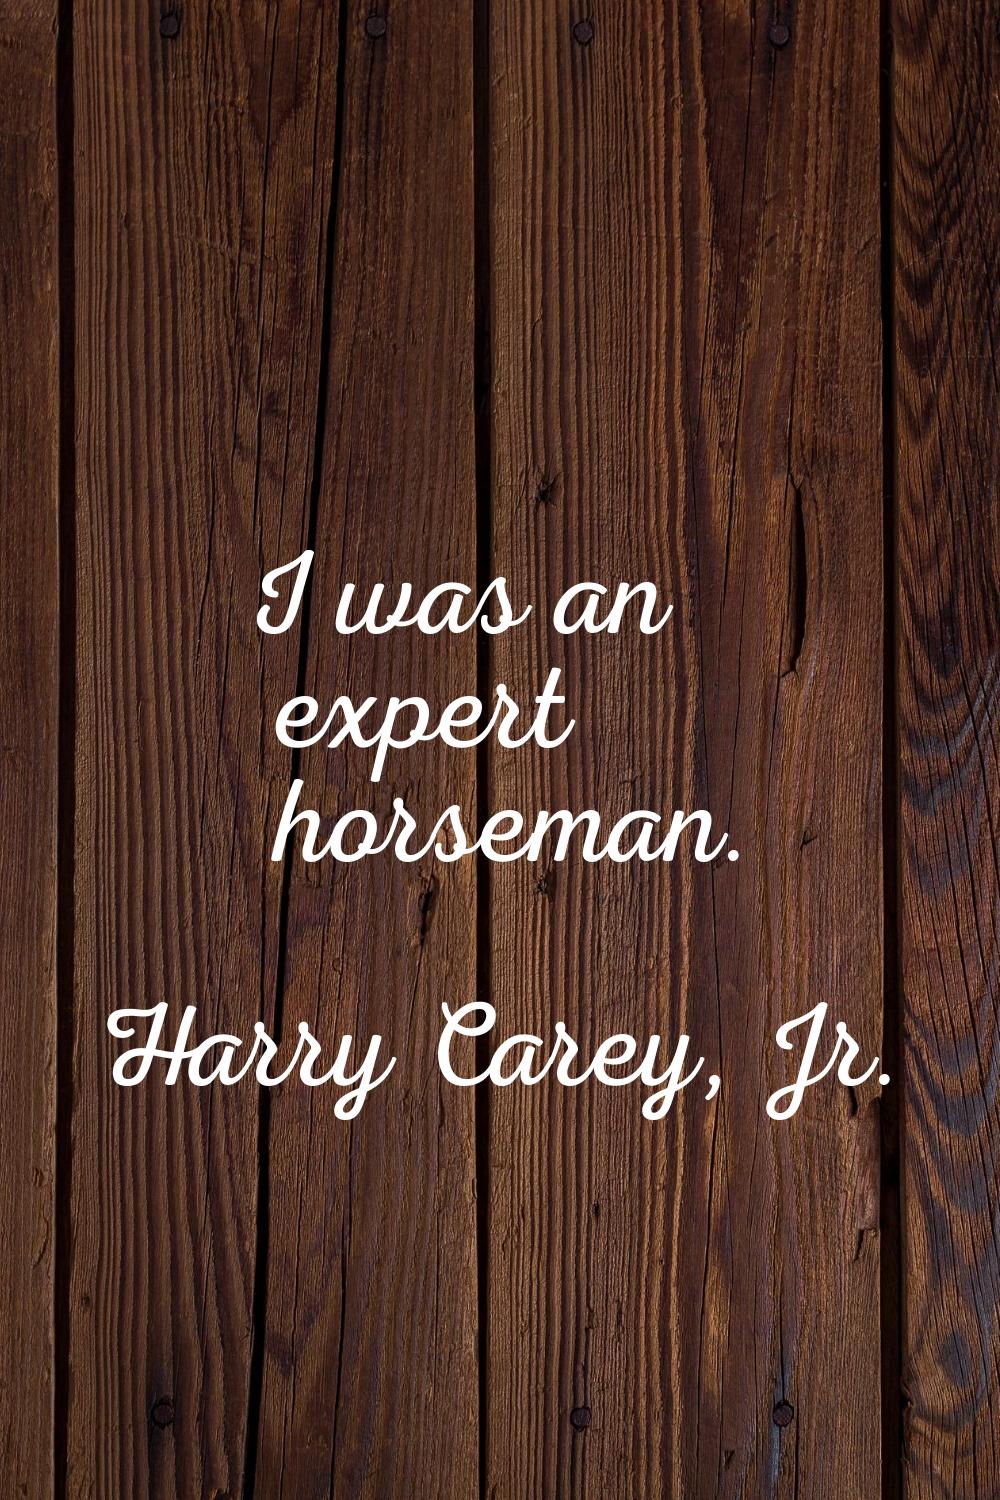 I was an expert horseman.